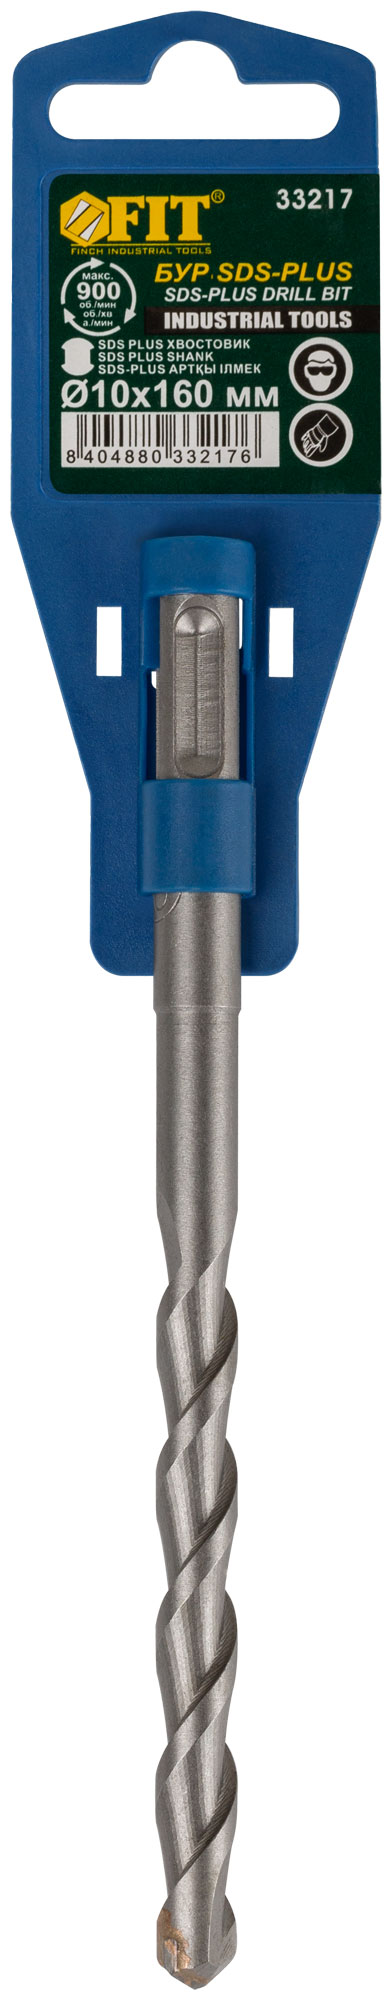 Бур по бетону SDS PLUS (синий корпус) 10x160 мм